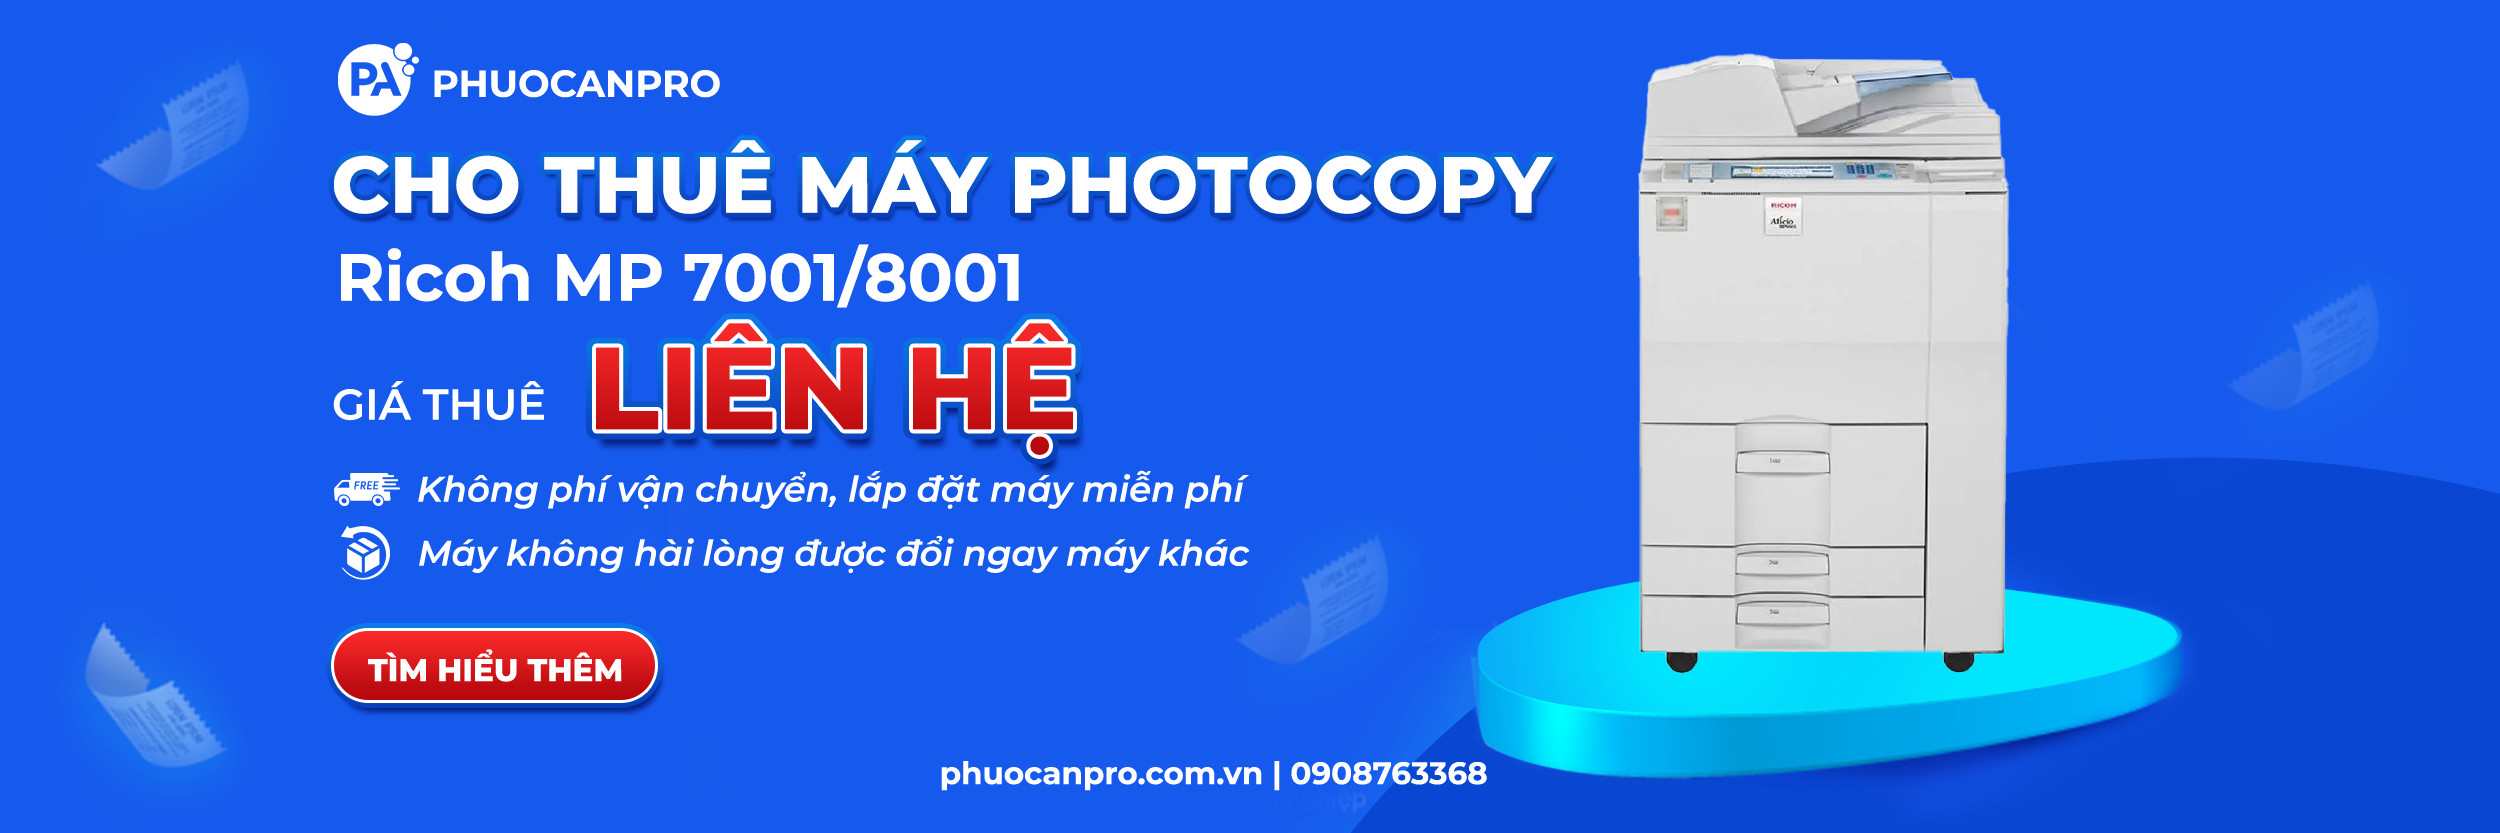 cho-thue-may-photo-7001-8001